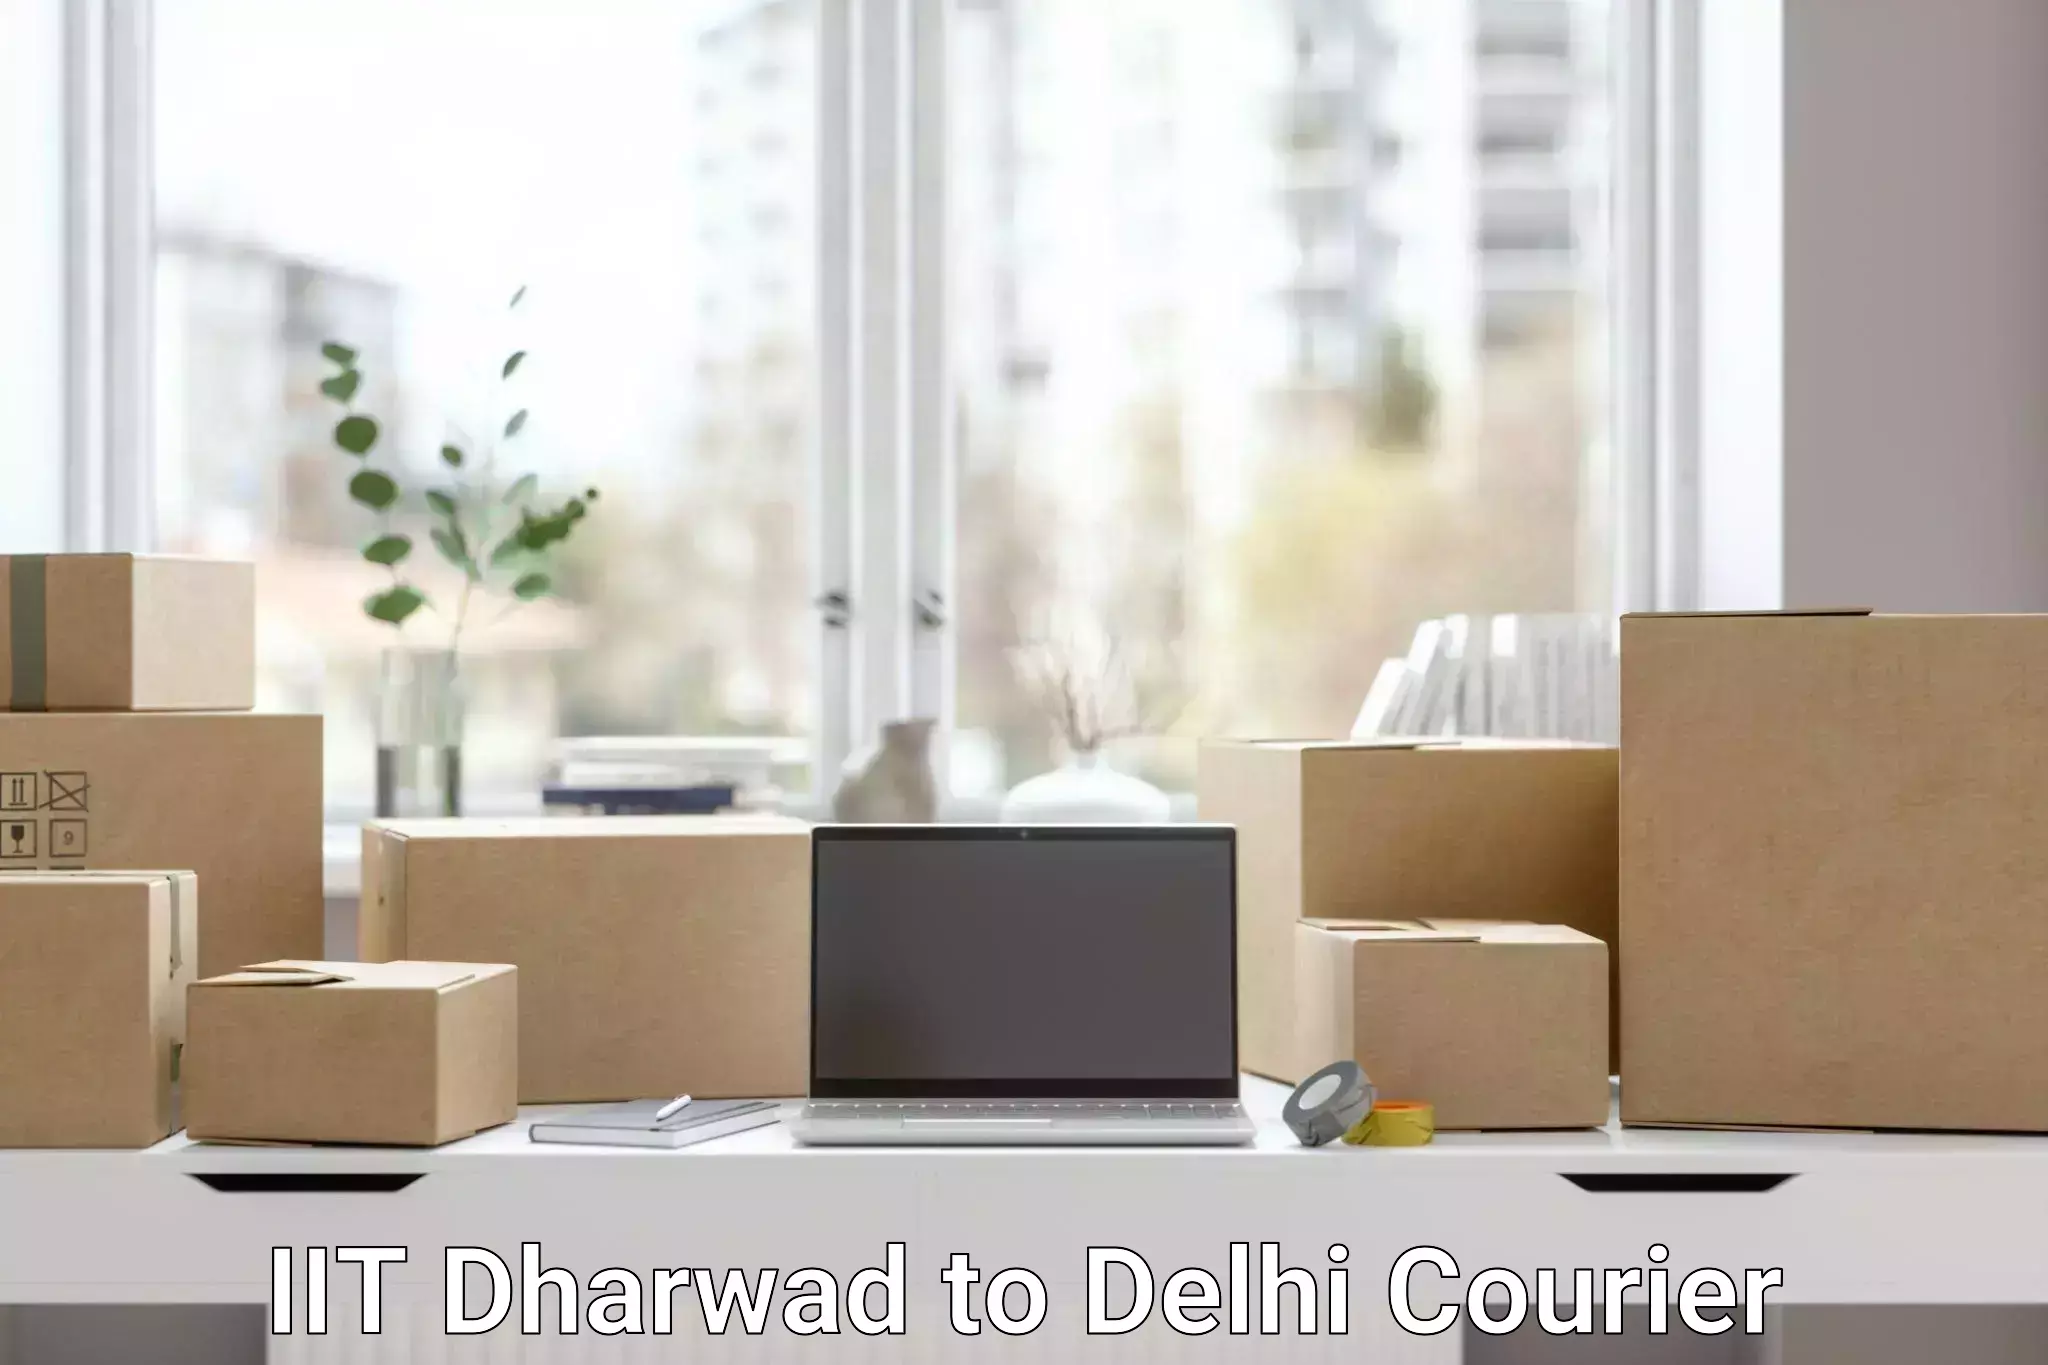 Next day courier IIT Dharwad to Jamia Millia Islamia New Delhi